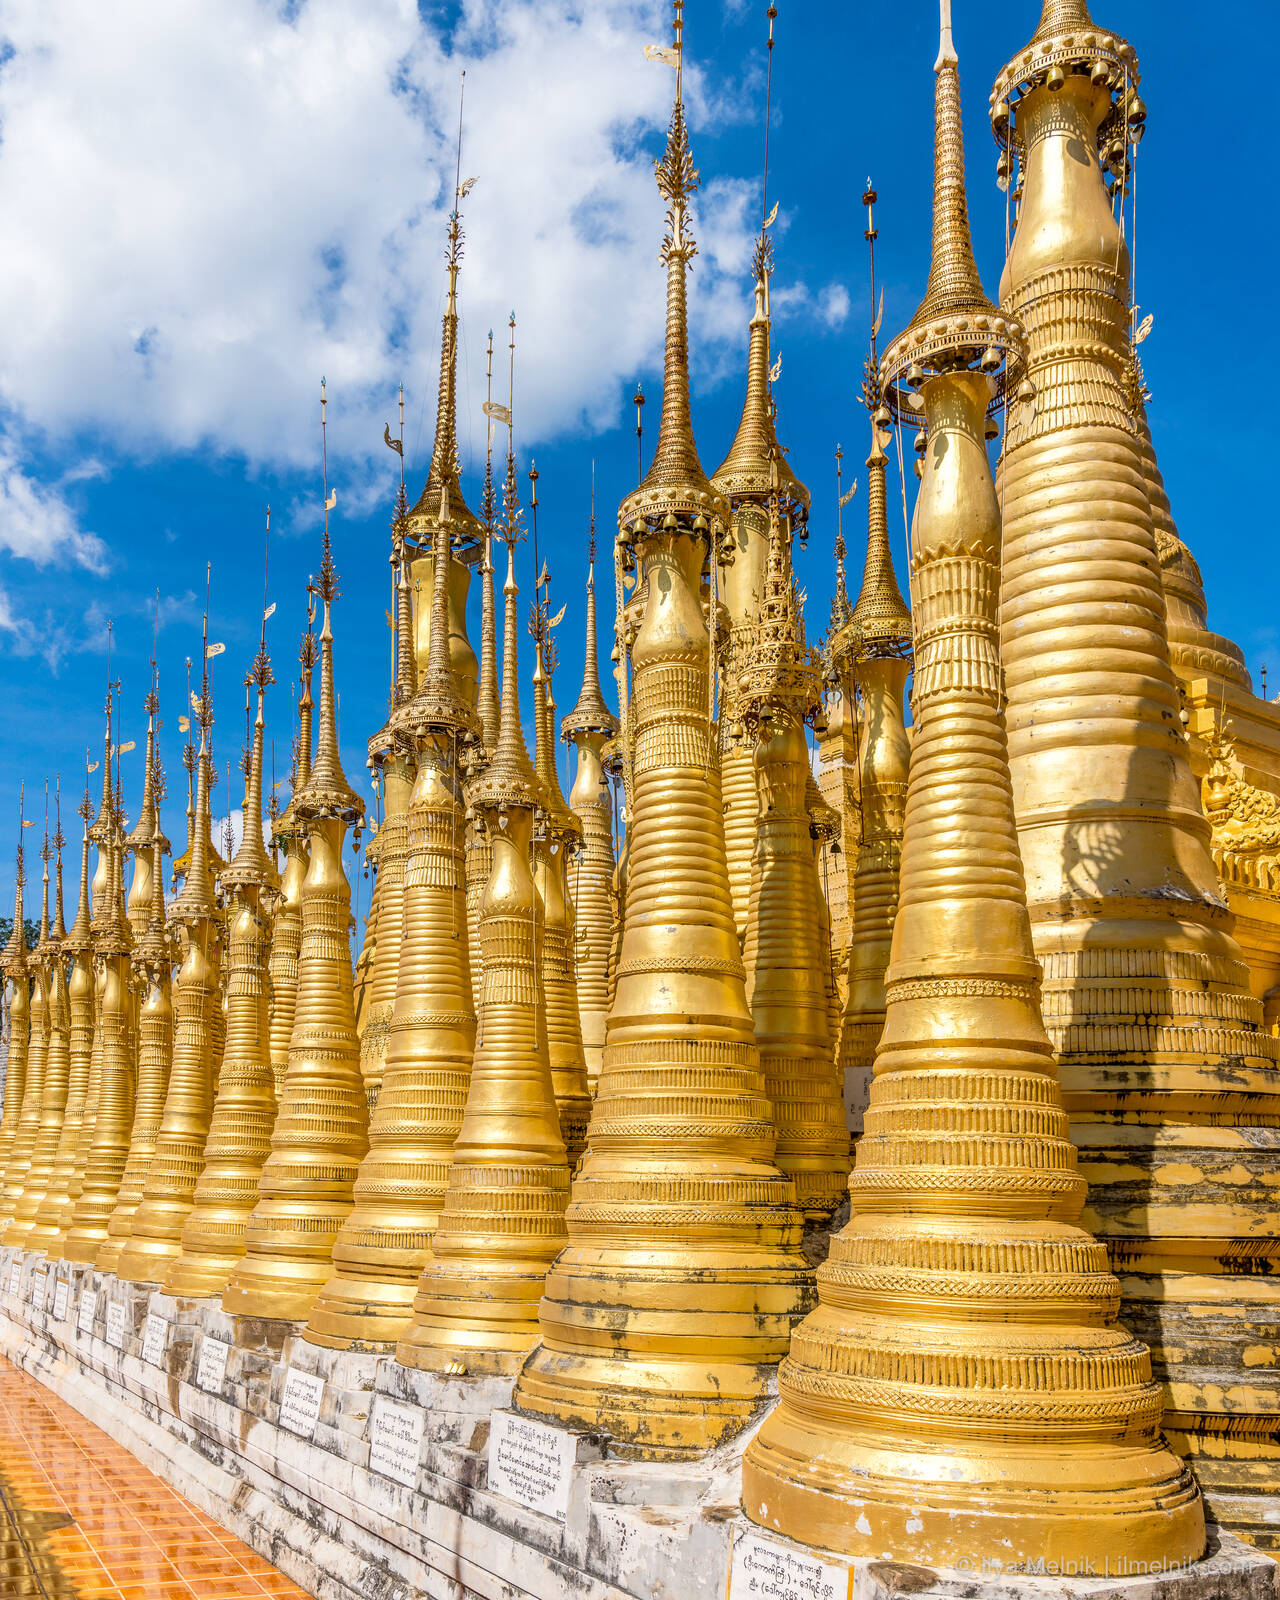 Image of Shwe Indein Pagoda by Ilya Melnik